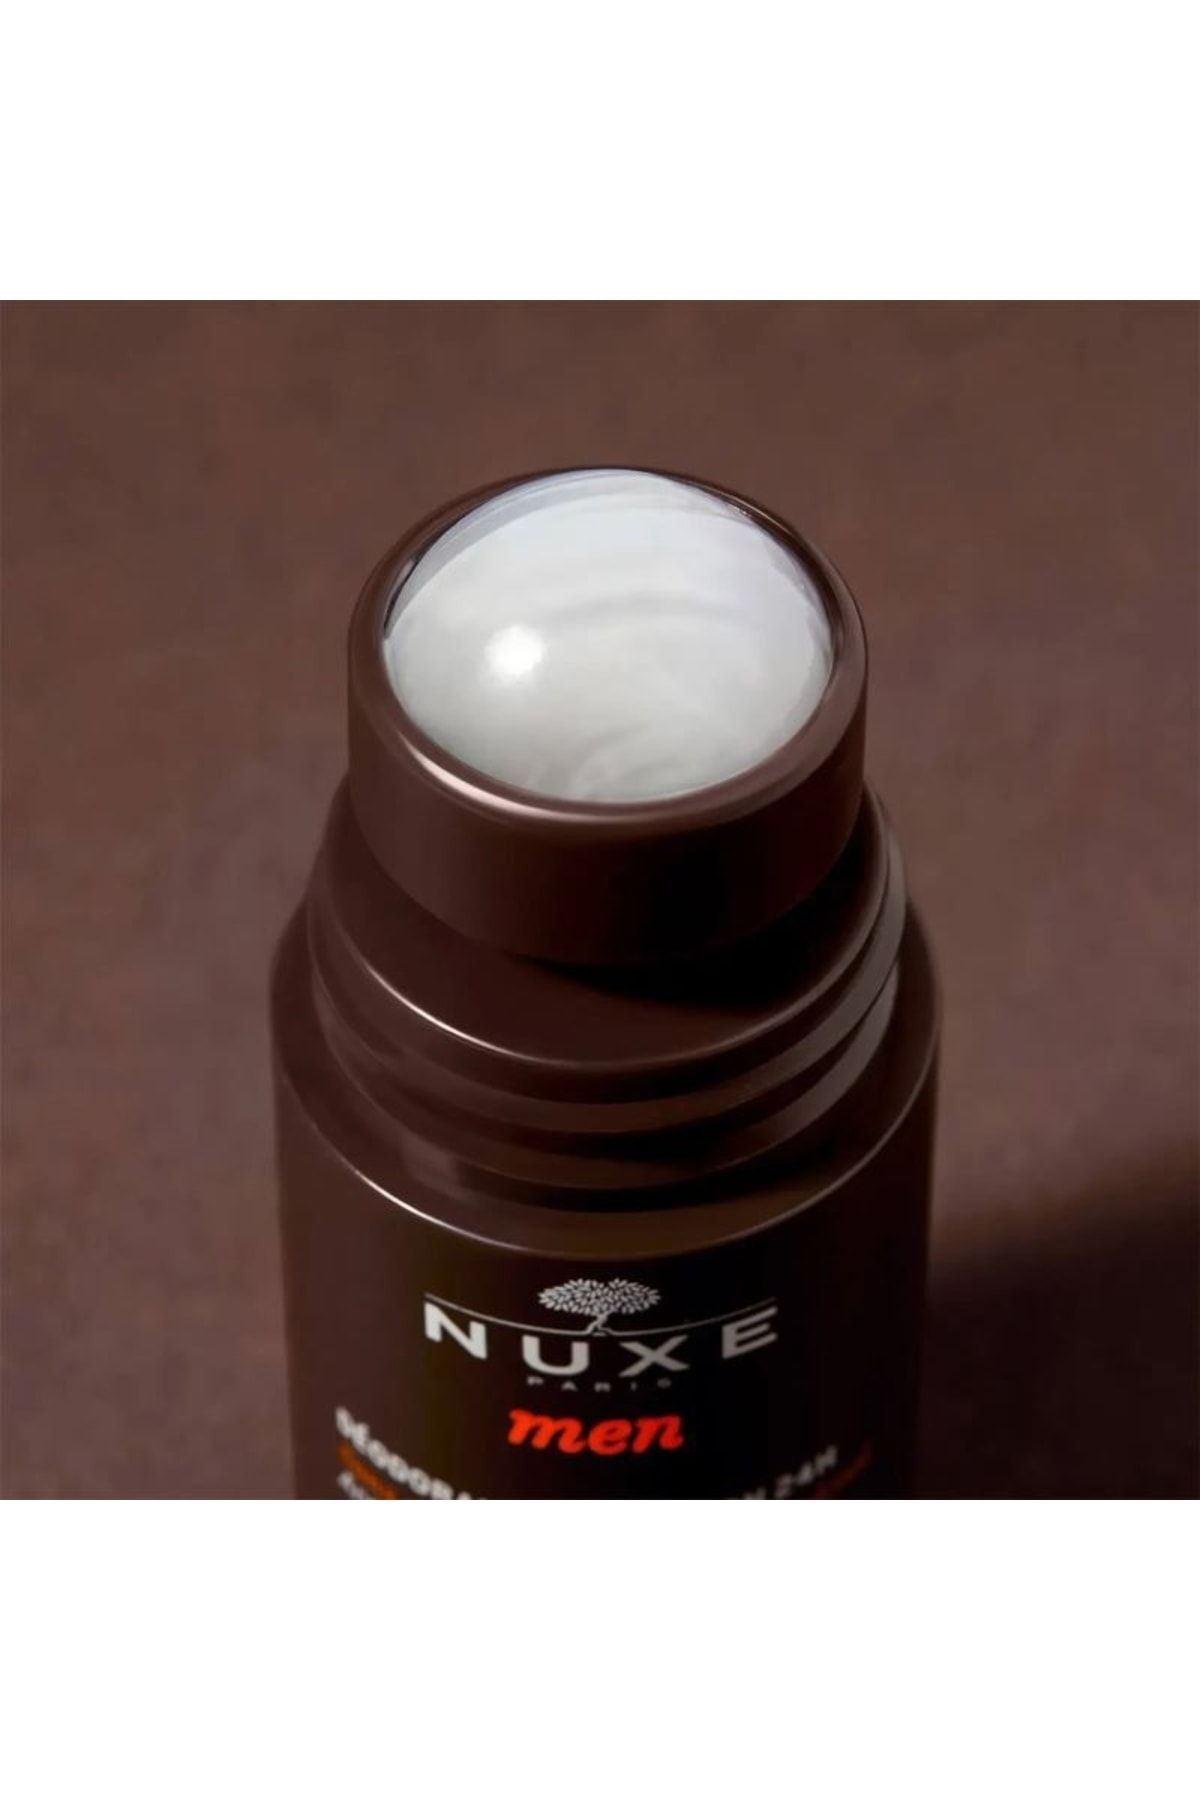 Nuxe Men's Deodorant 24hr-50 Ml